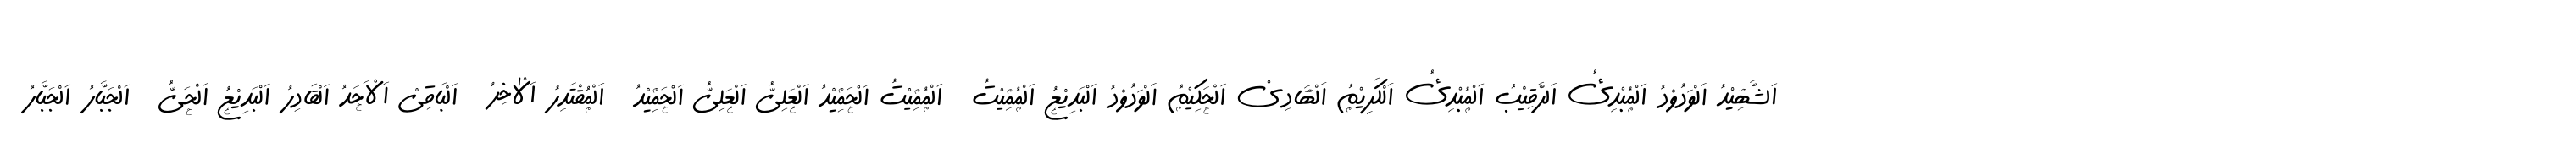 99 Names of ALLAH Handwriting